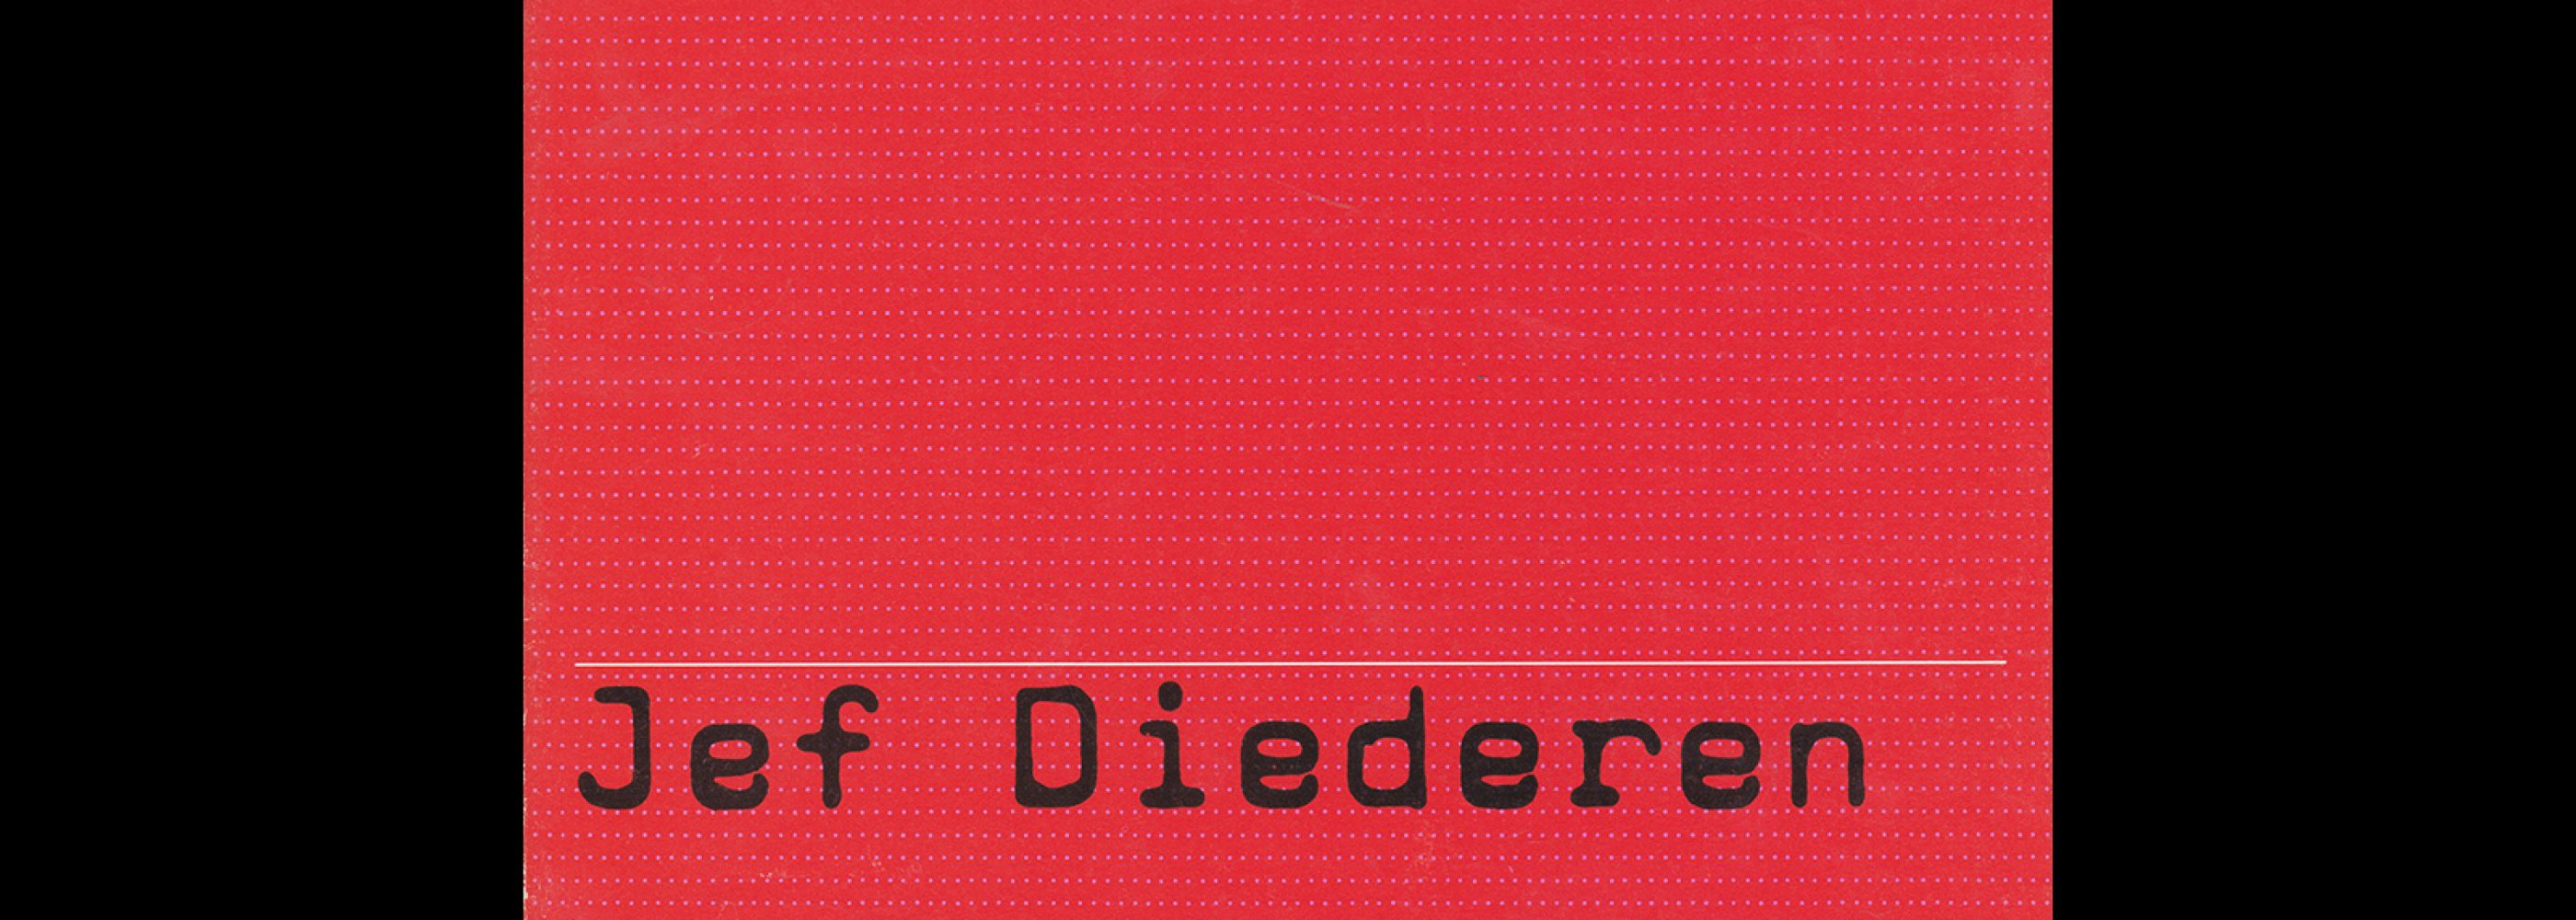 Fodor 3a, 1972 - Jef Diederen. Designed by Wim Crouwel.